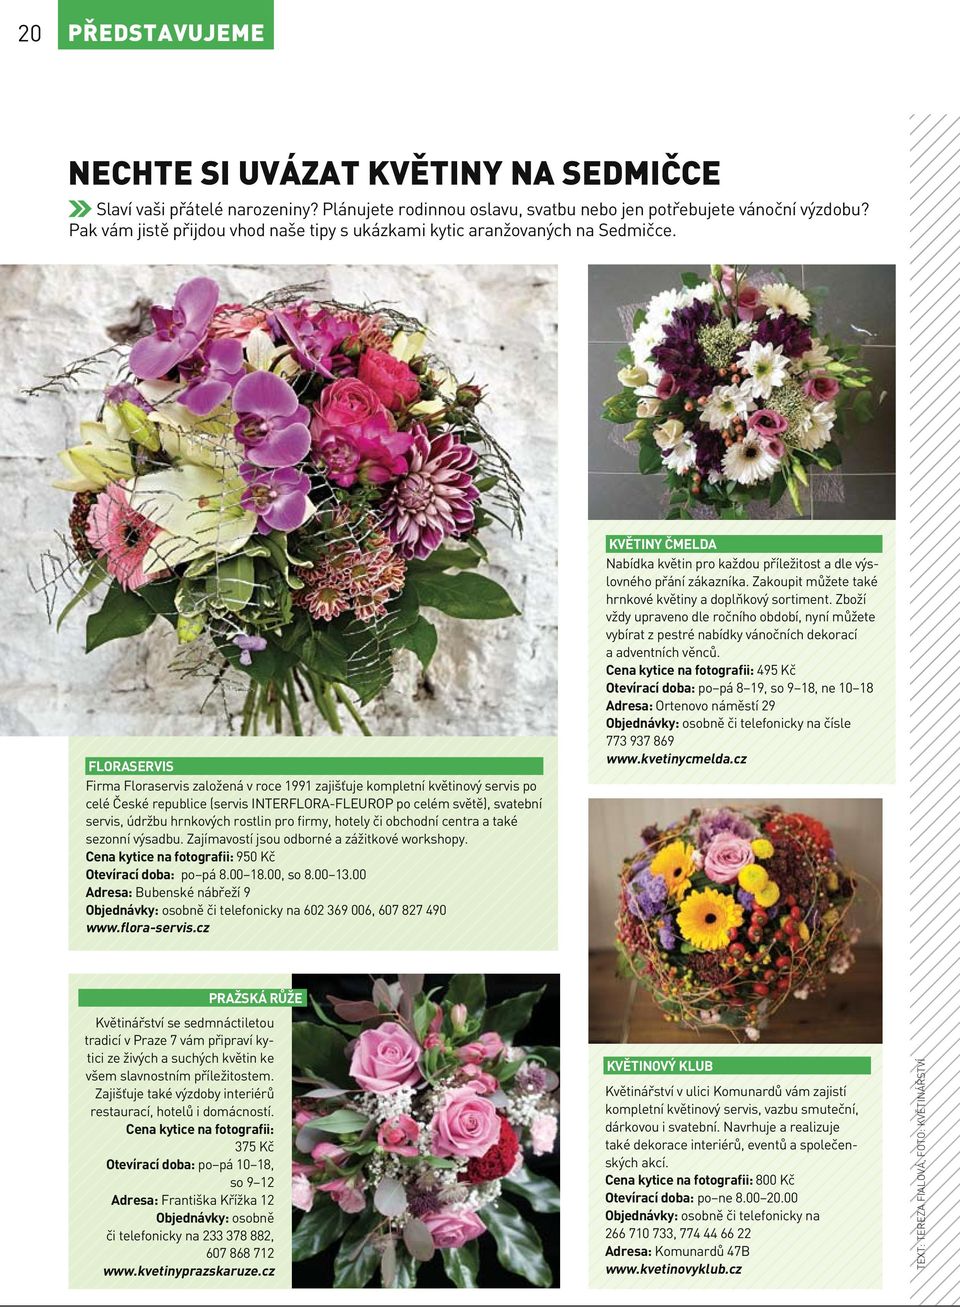 FLORASERVIS Firma Floraservis založená v roce 1991 zajišťuje kompletní květinový servis po celé České republice (servis INTERFLORA-FLEUROP po celém světě), svatební servis, údržbu hrnkových rostlin